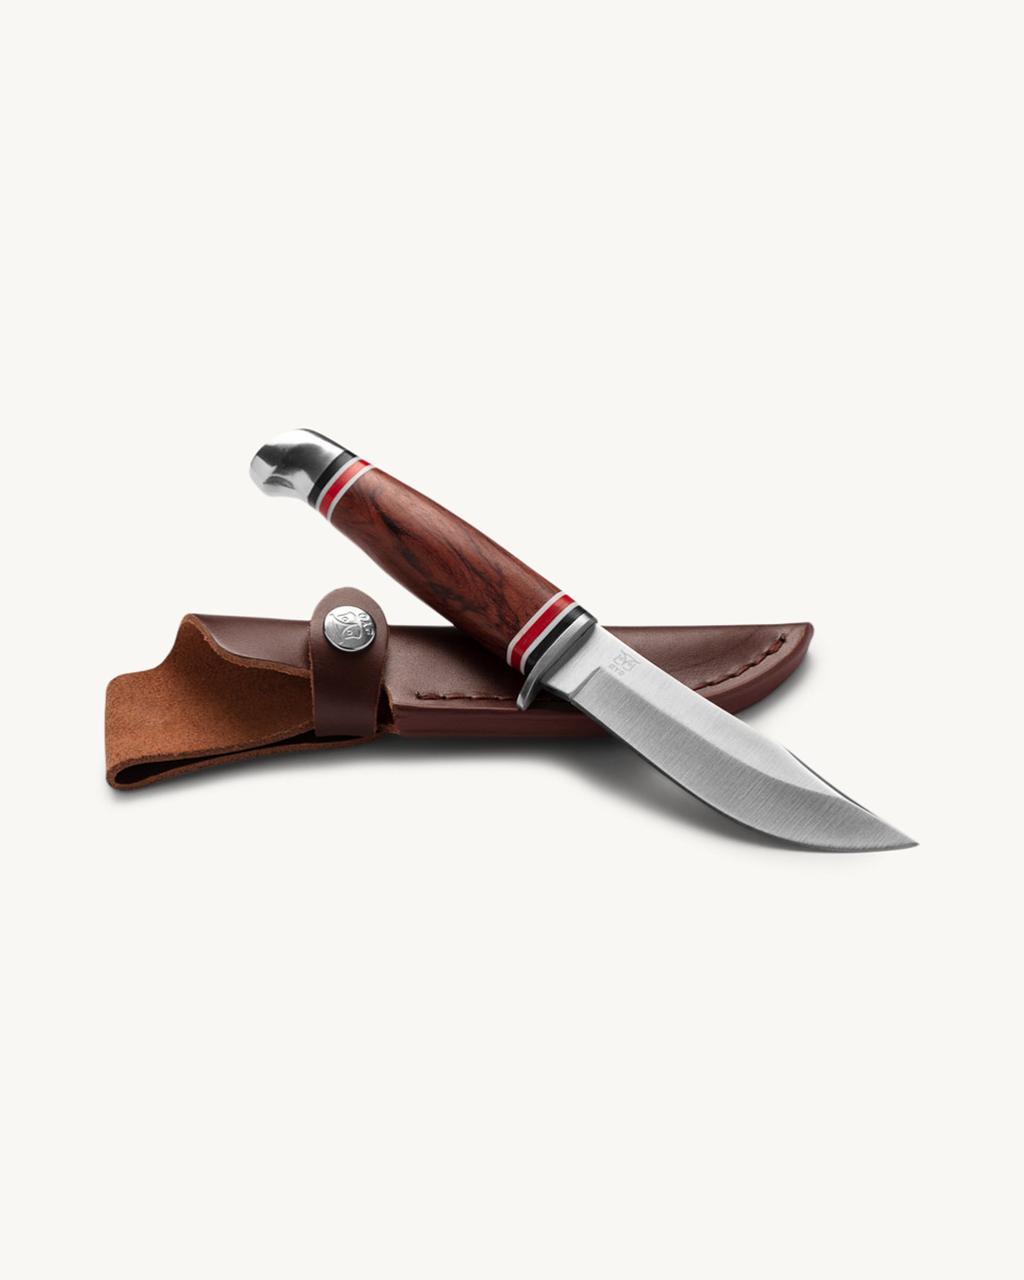 Geilo knife w/leather sheat